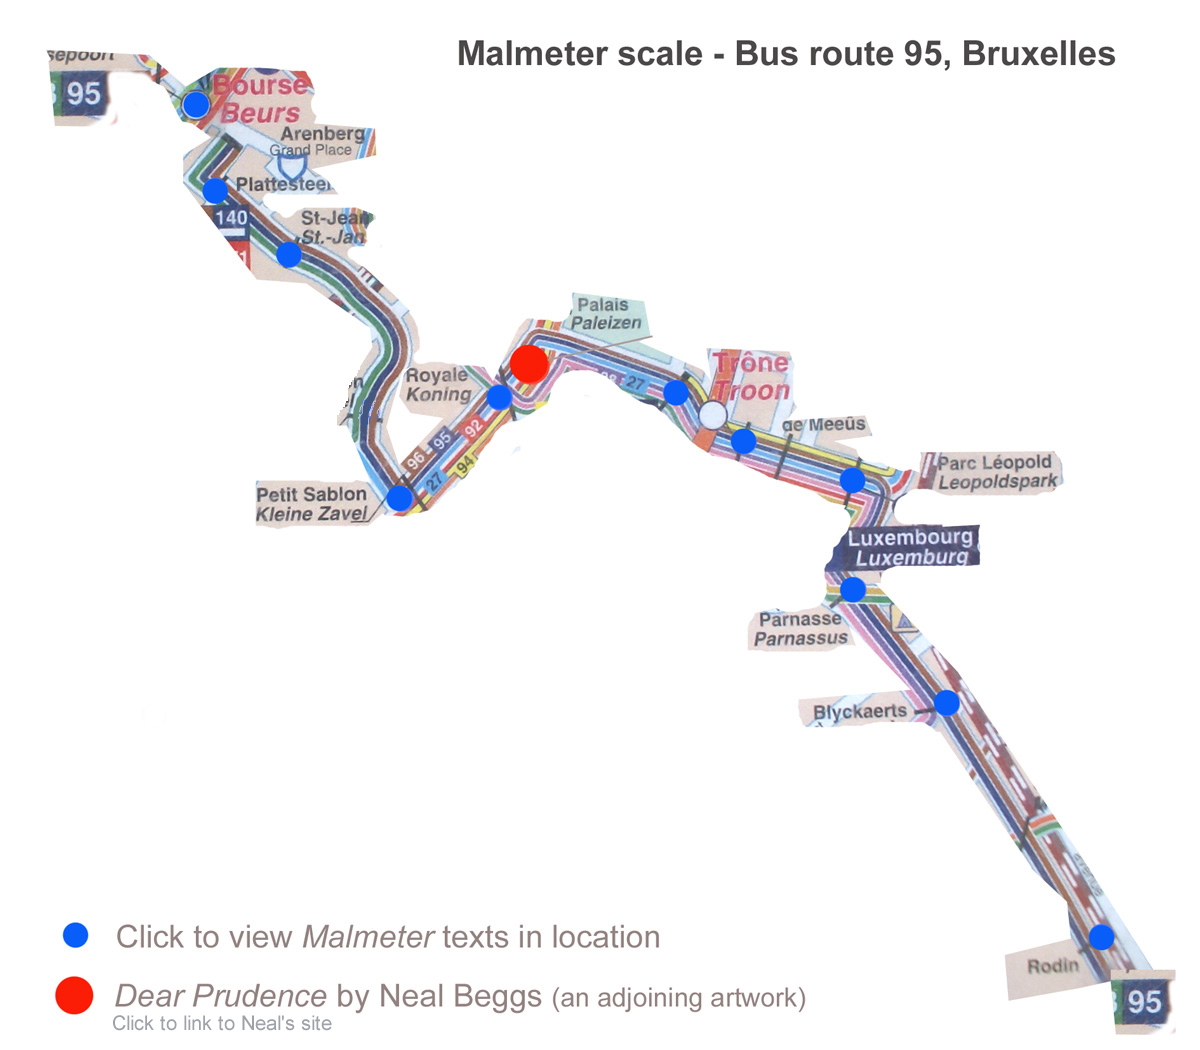 Malmeter Scale 95 bus route, Bruxelles 2007 (Public text work)